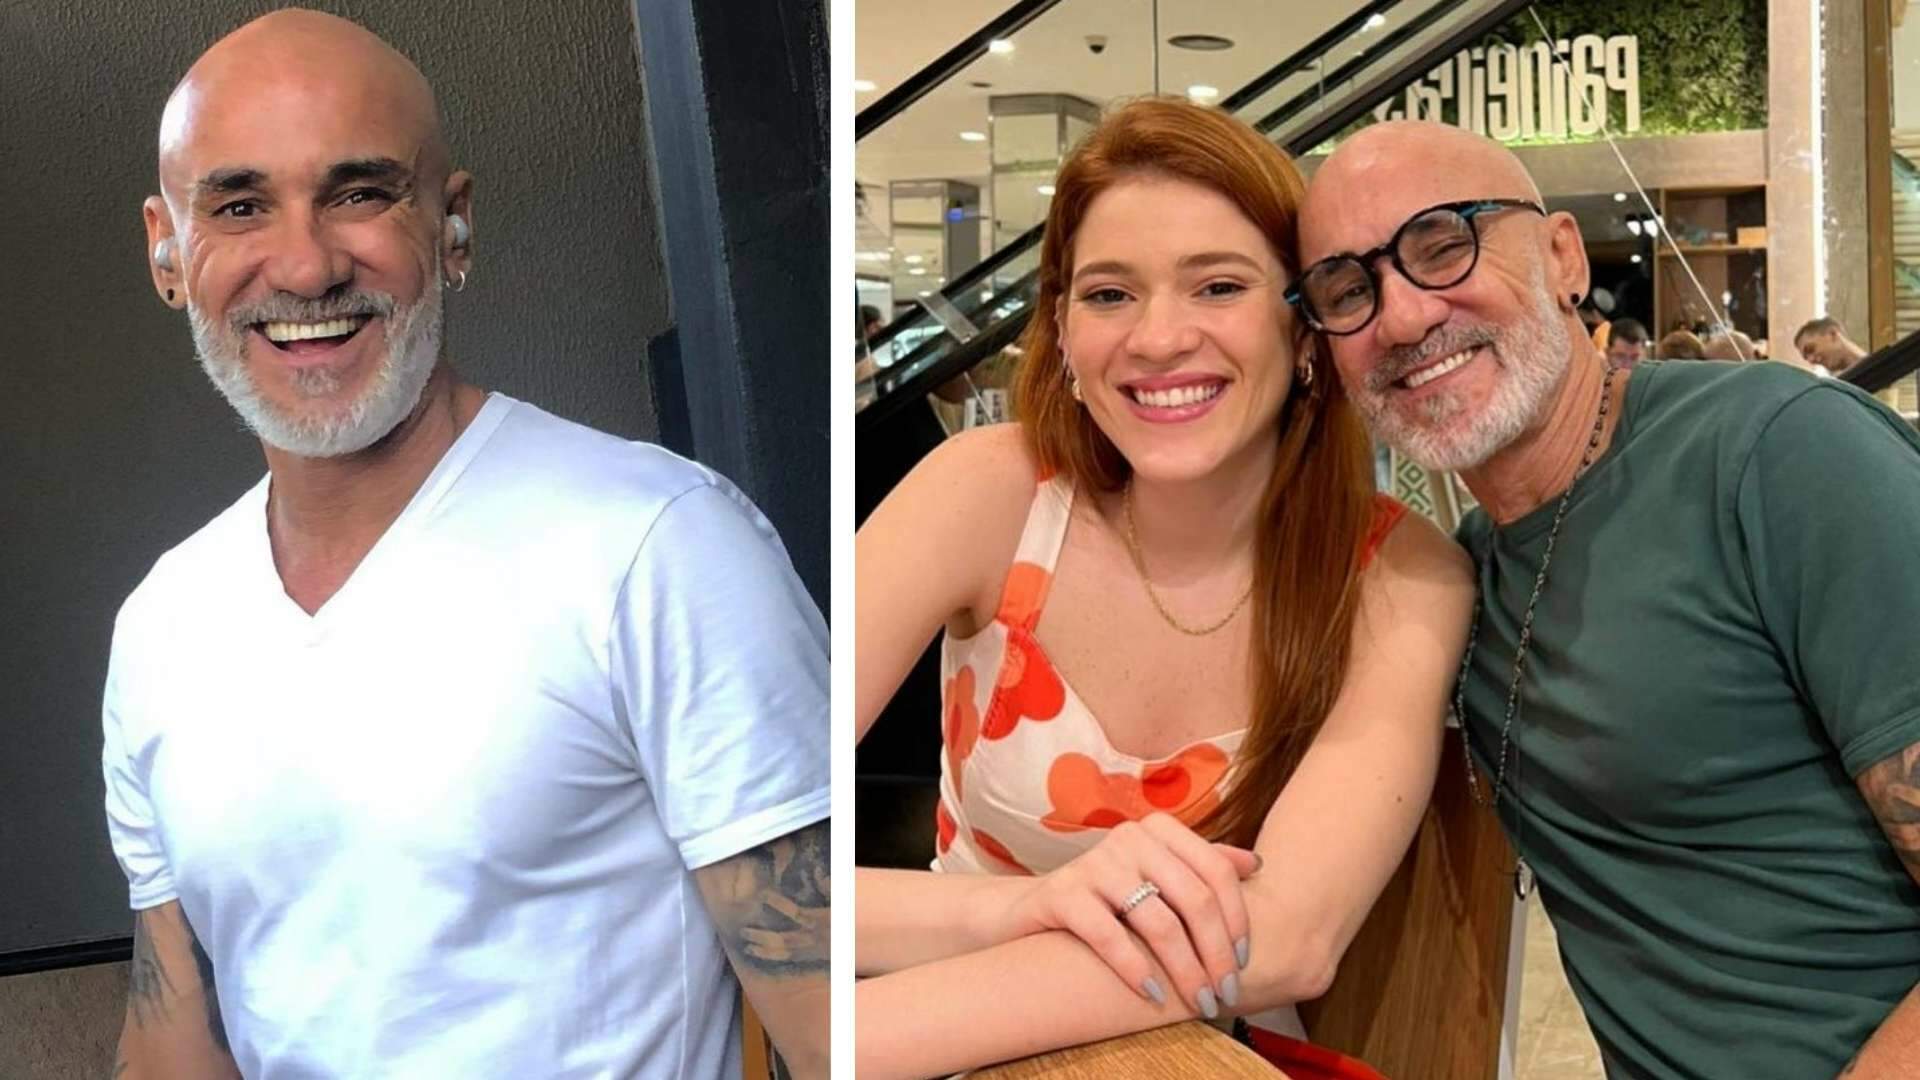 Pai de Ana Clara, Papito, desabafa sobre depressão após divórcio: “Emagreci onze quilos” - Metropolitana FM